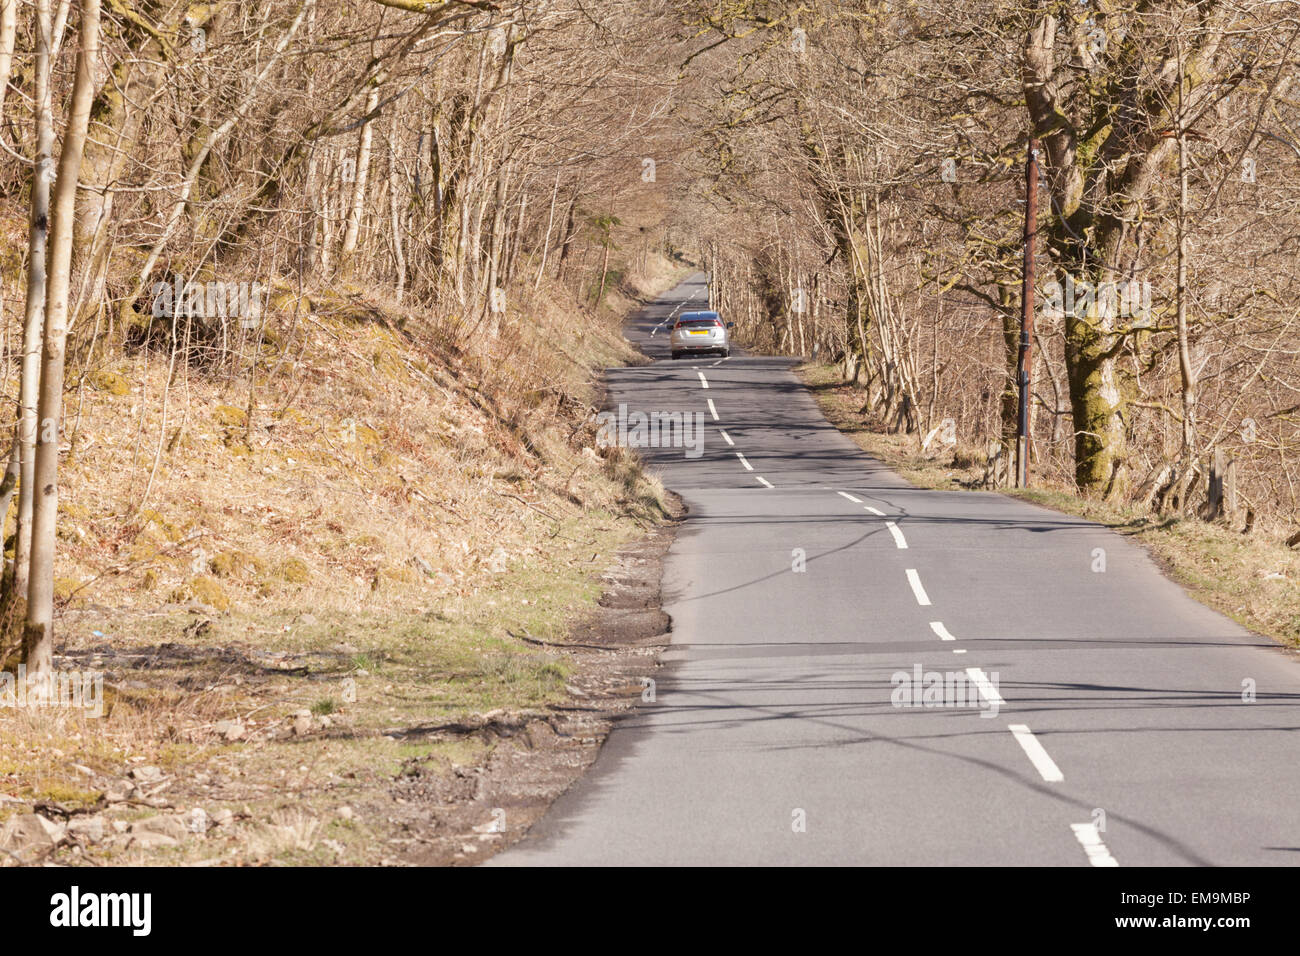 Einsamen ruhigen Straße in den lowlands von Schottland mit einem Auto in der Ferne, Großbritannien Stockfoto